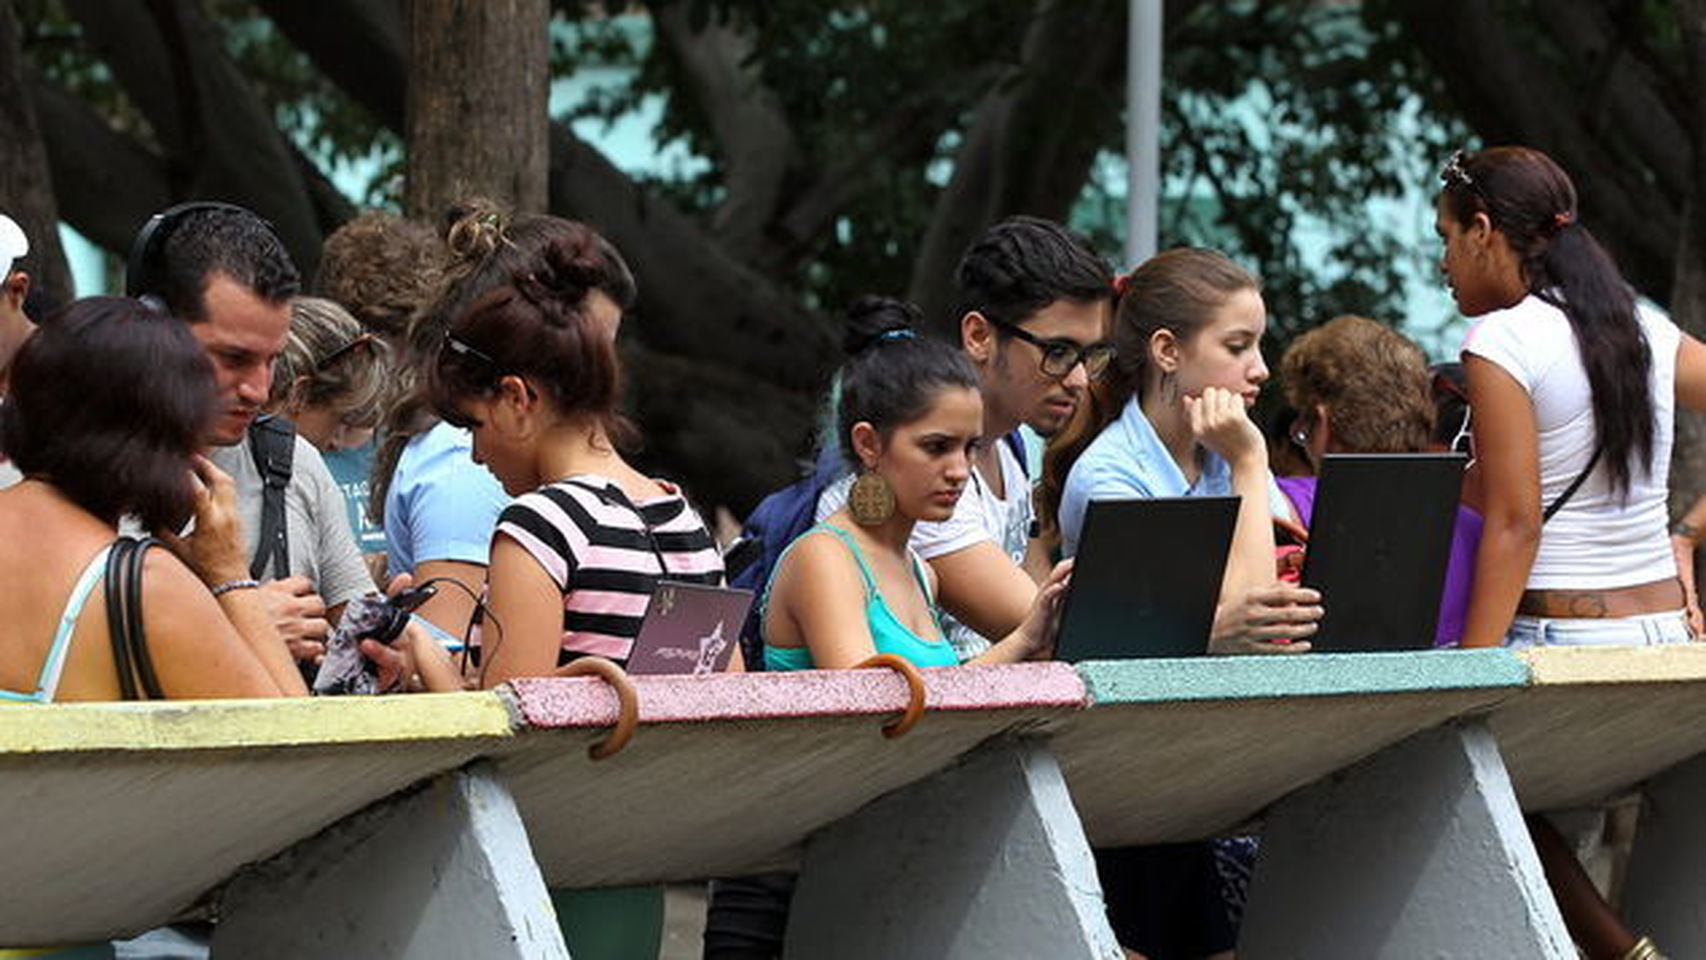 En los puntos wifi de La Habana, se concentran decenas de personas